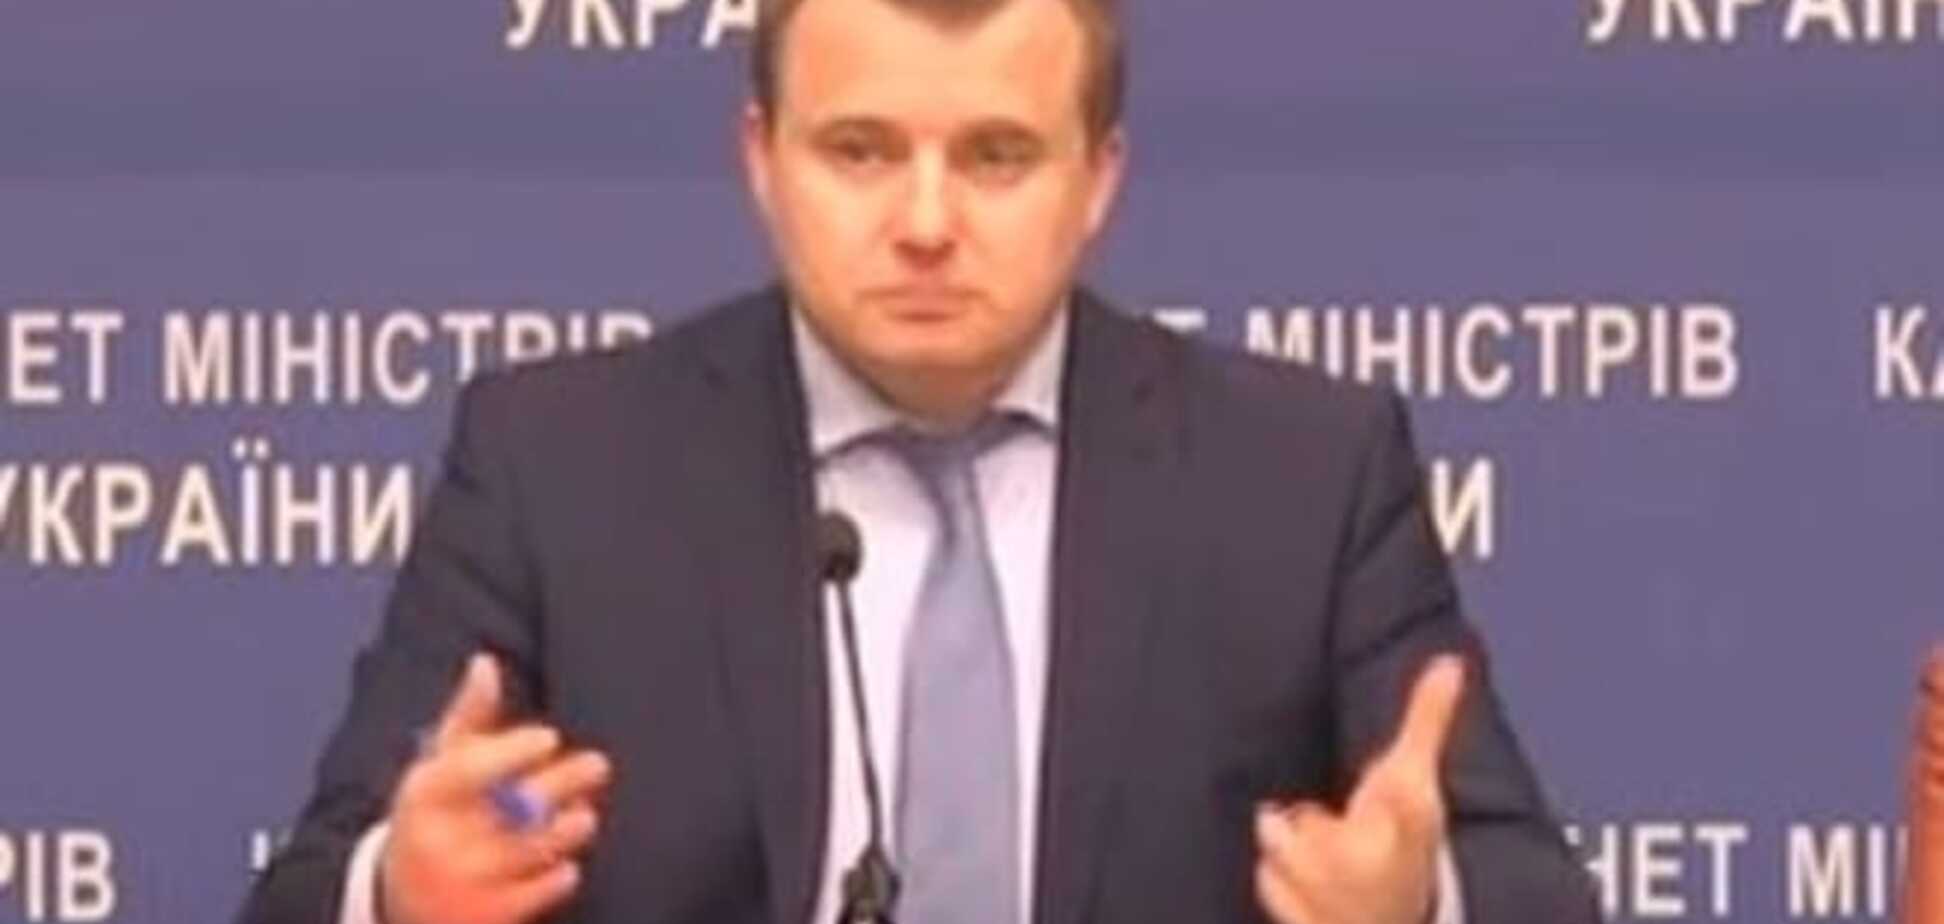 Шахты Украины ежемесячно приносят убытки на 250 млн грн